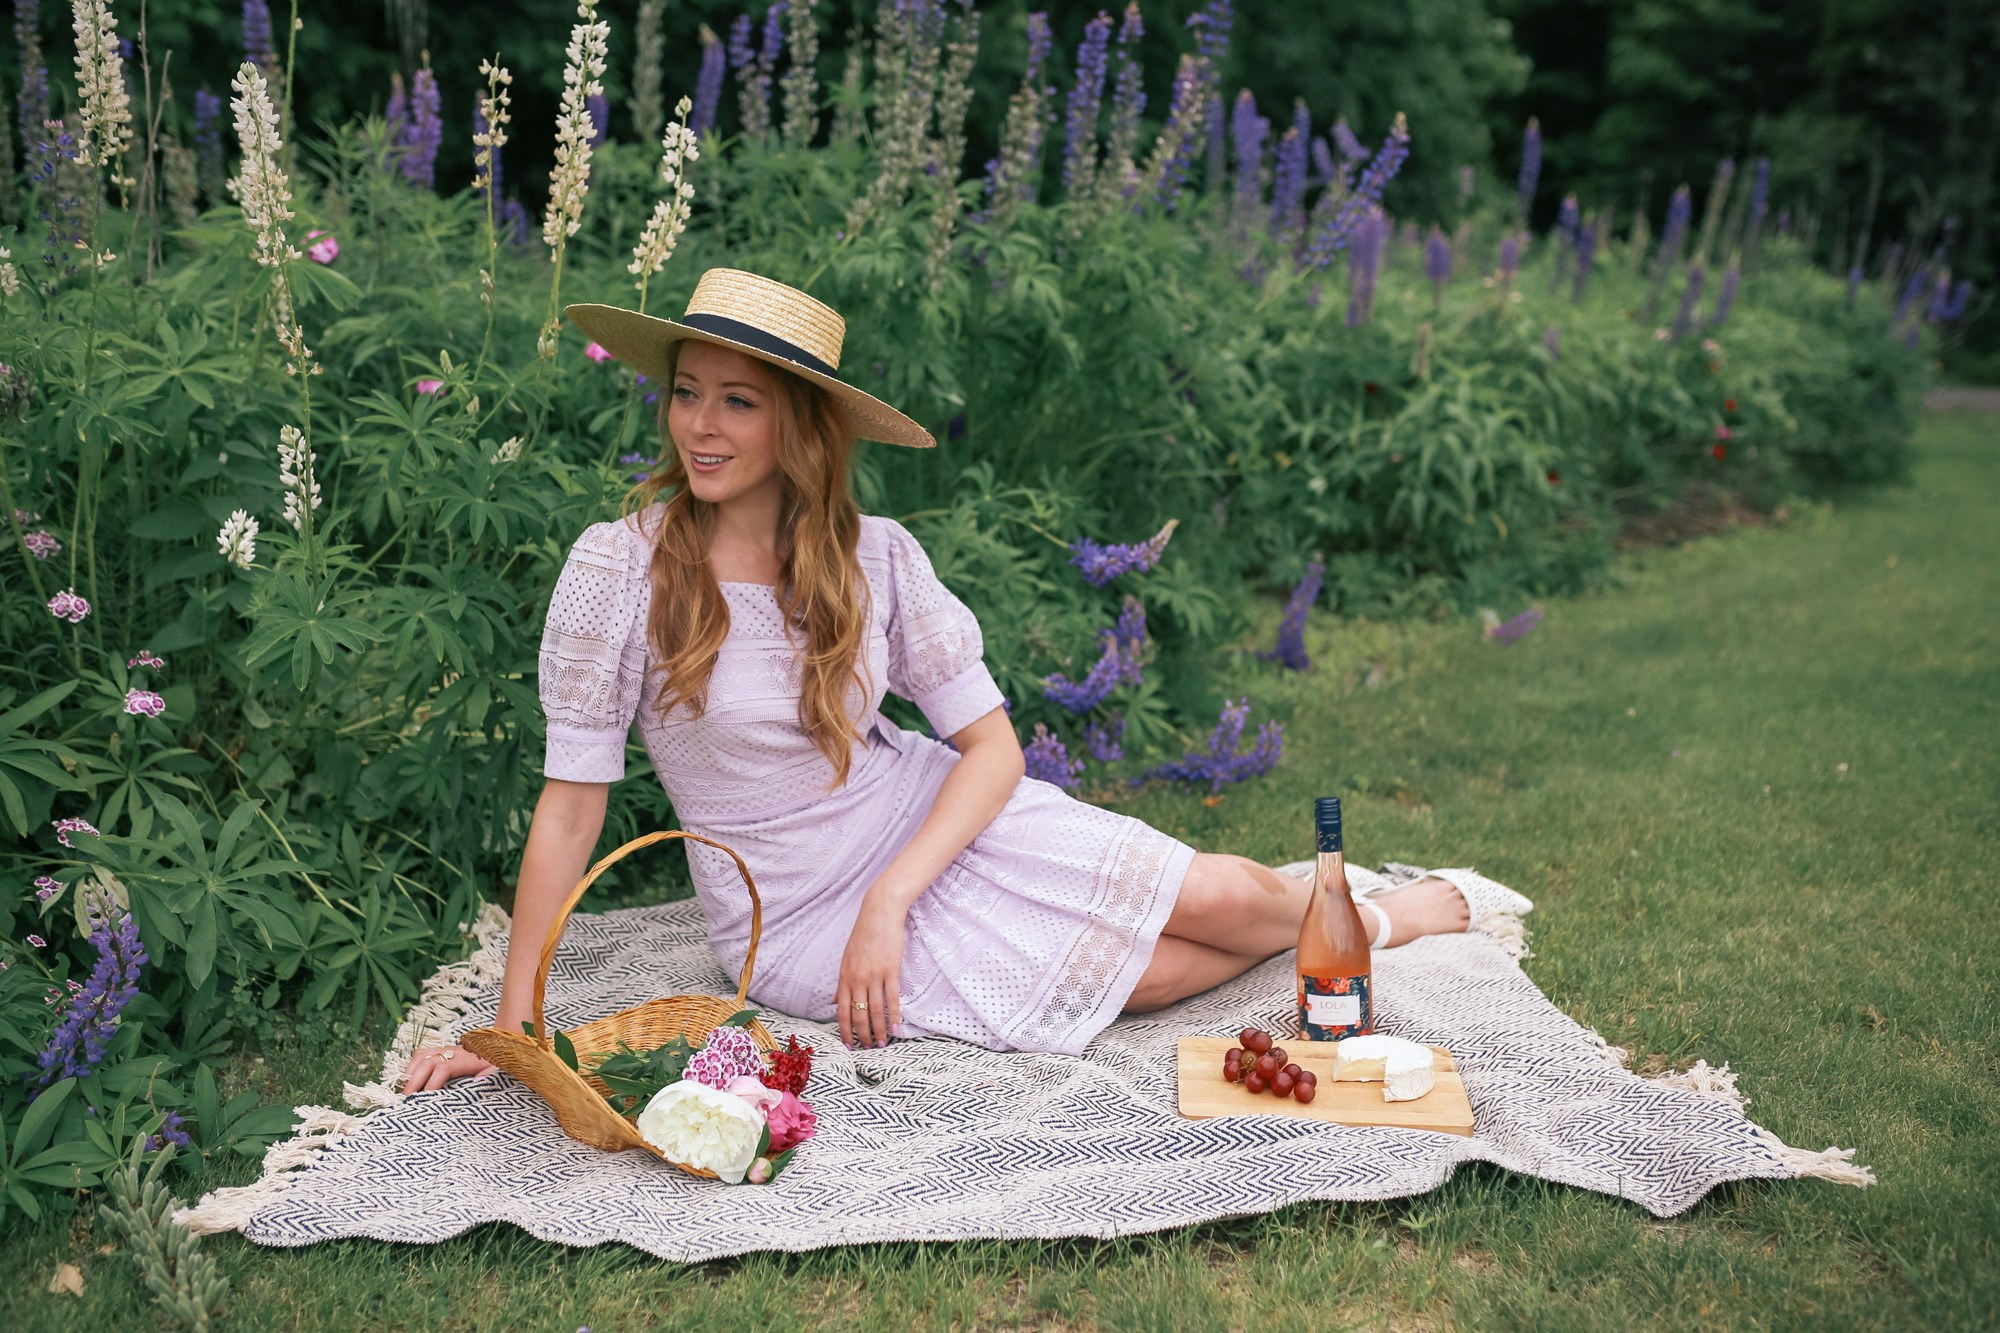 The Prettiest vintage picnic: Rachel Parcell Dress Review - Purple Hush Square Neck Lace Dress. 